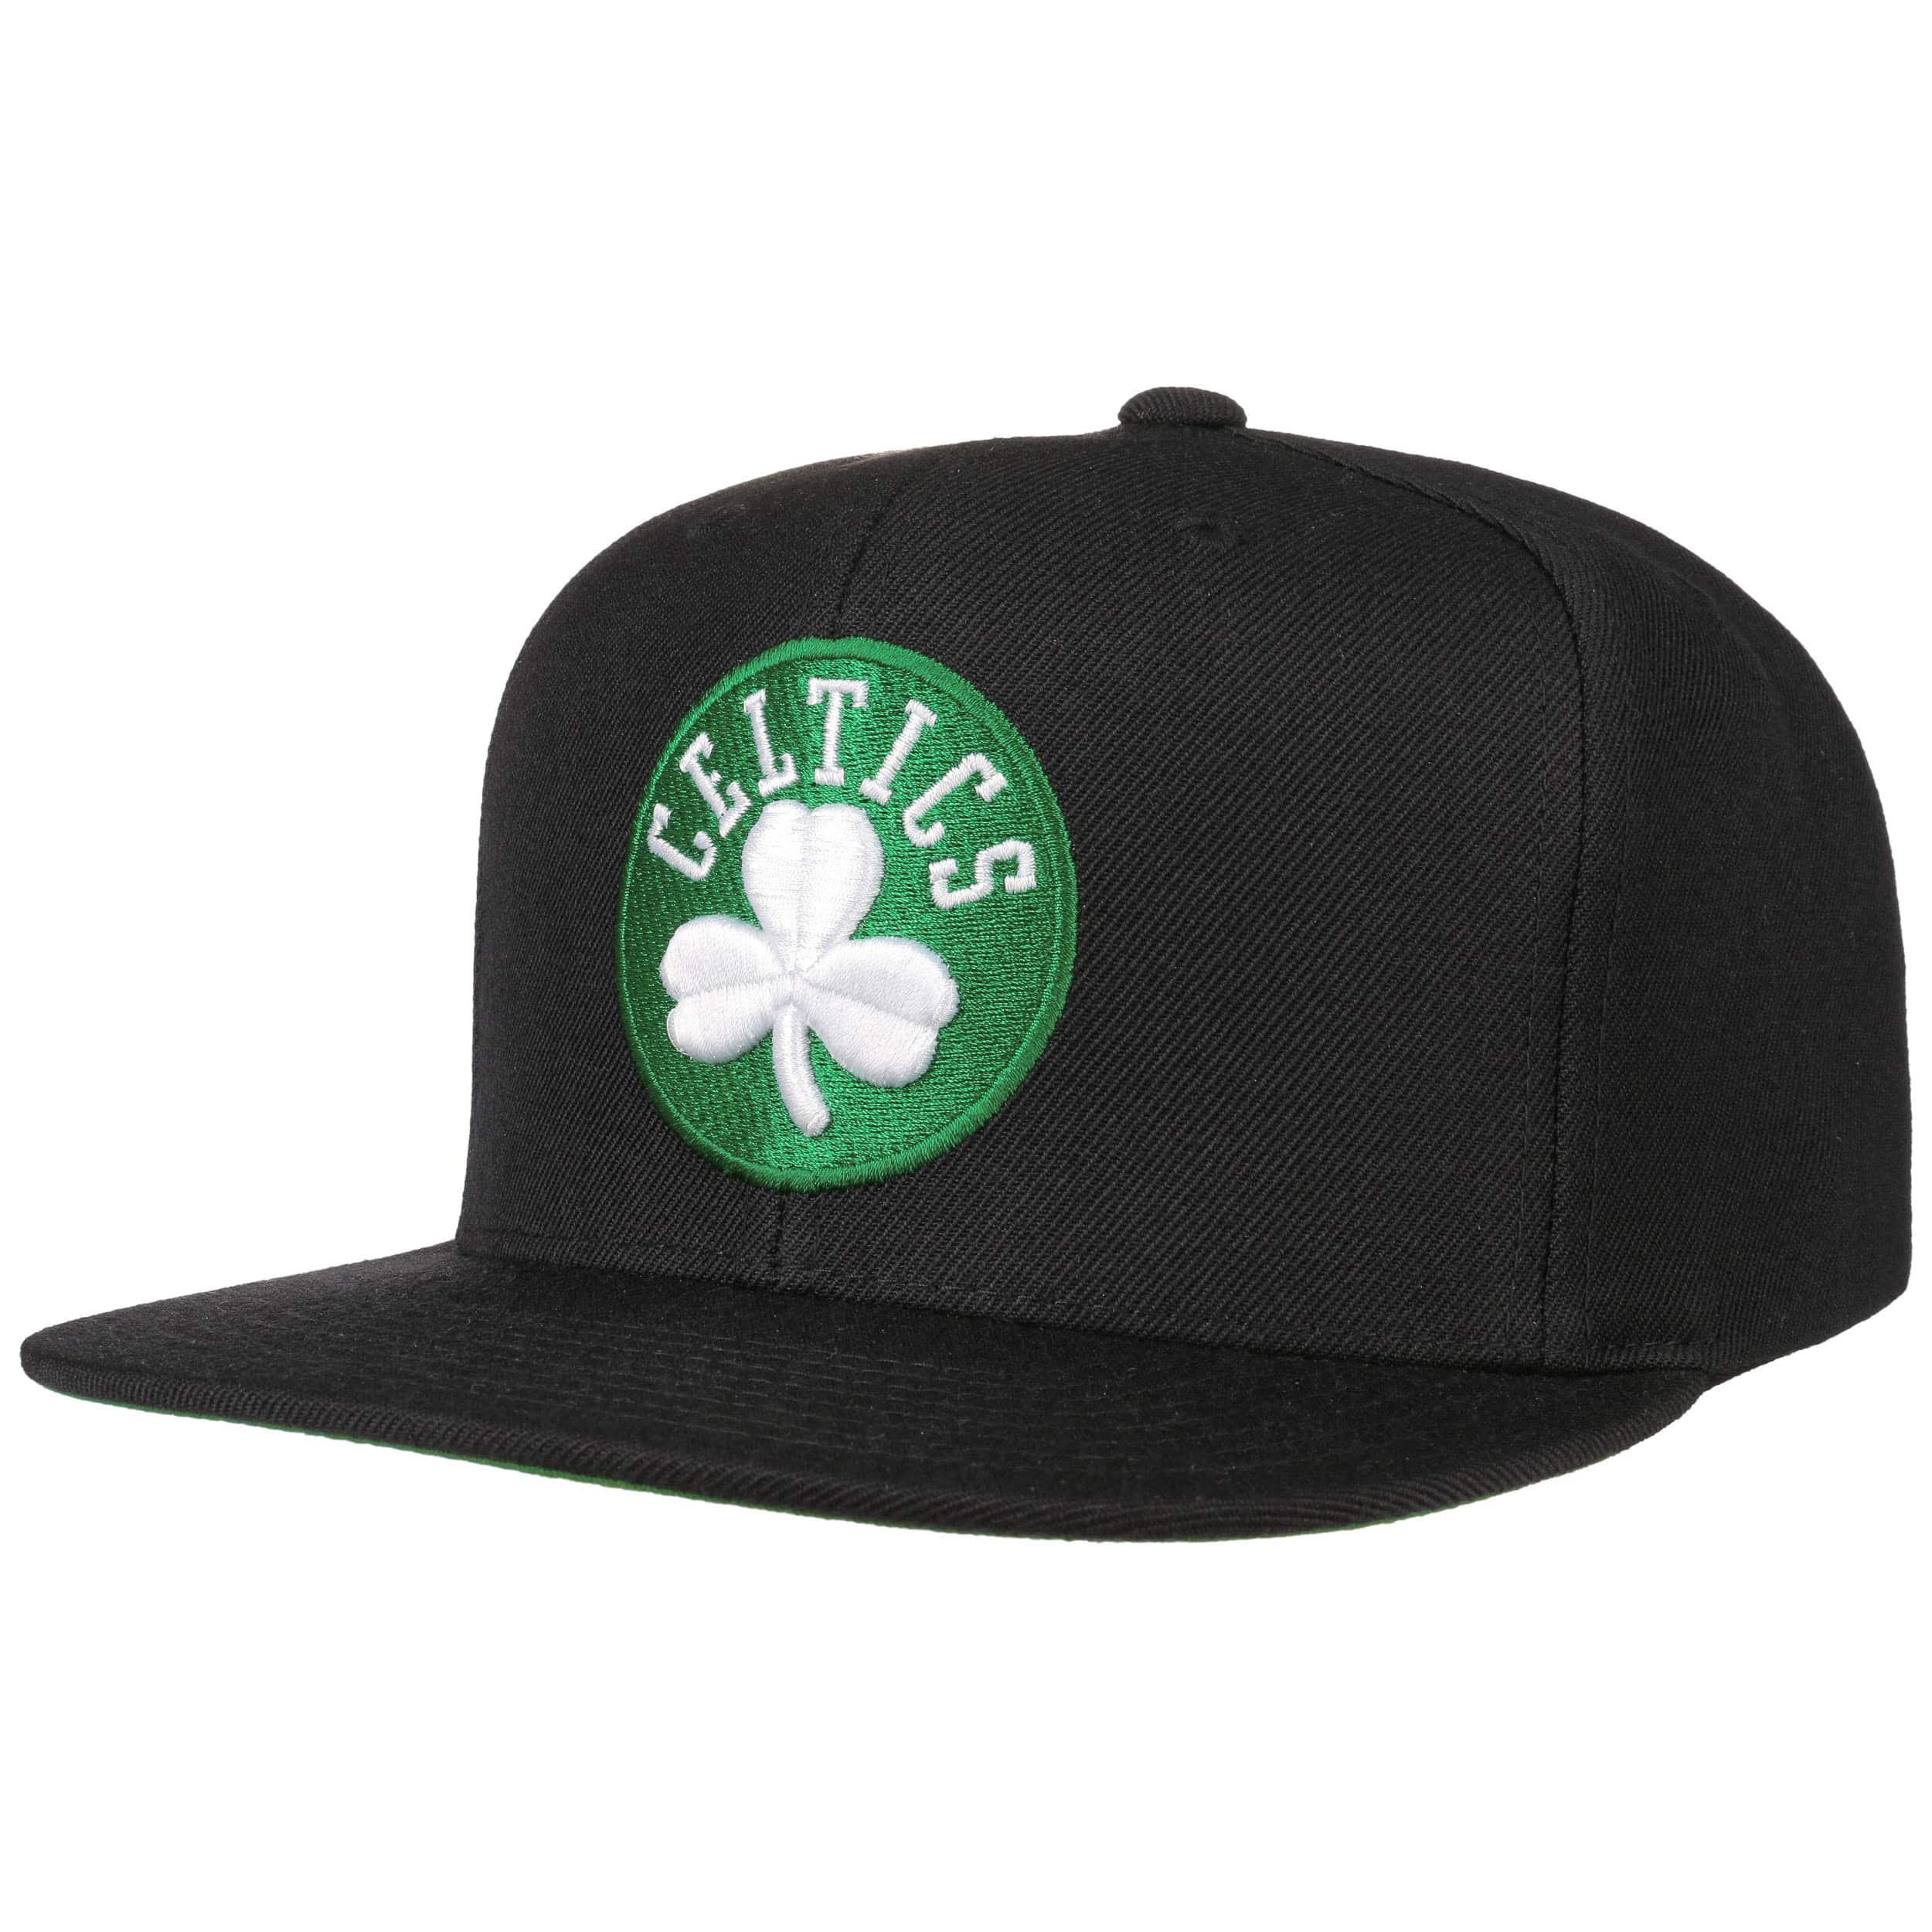 Nero Mitchell And Ness Cappello Boston Celtics Regolabile 